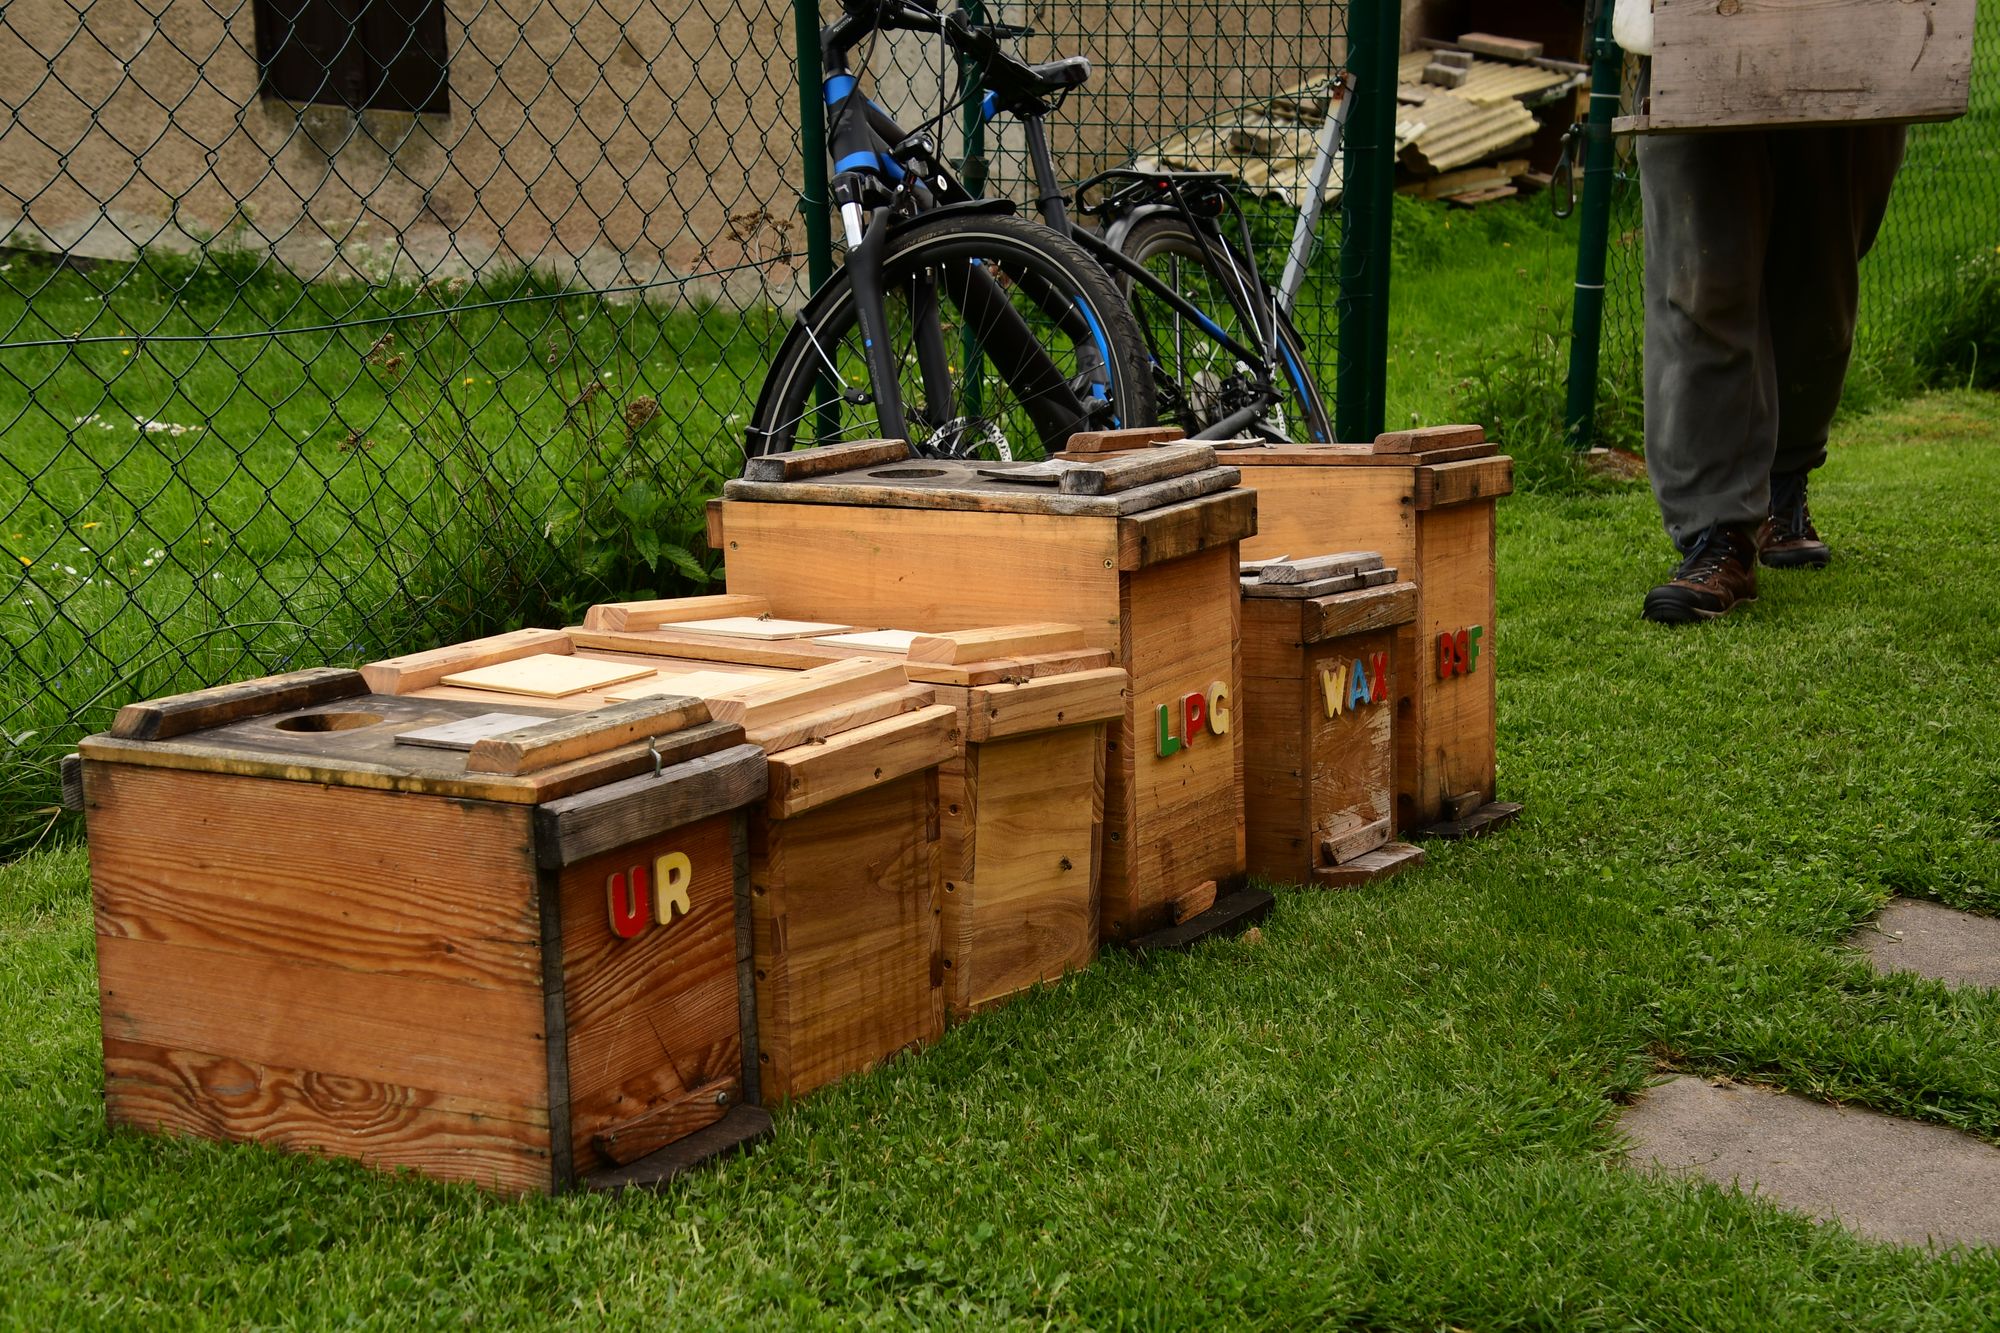 Bienenvölker: Ableger entstehen.                          Am Sonntag wurden 7 Ableger aus den vorhandenen Völkern gebildet. (16.05.2021)